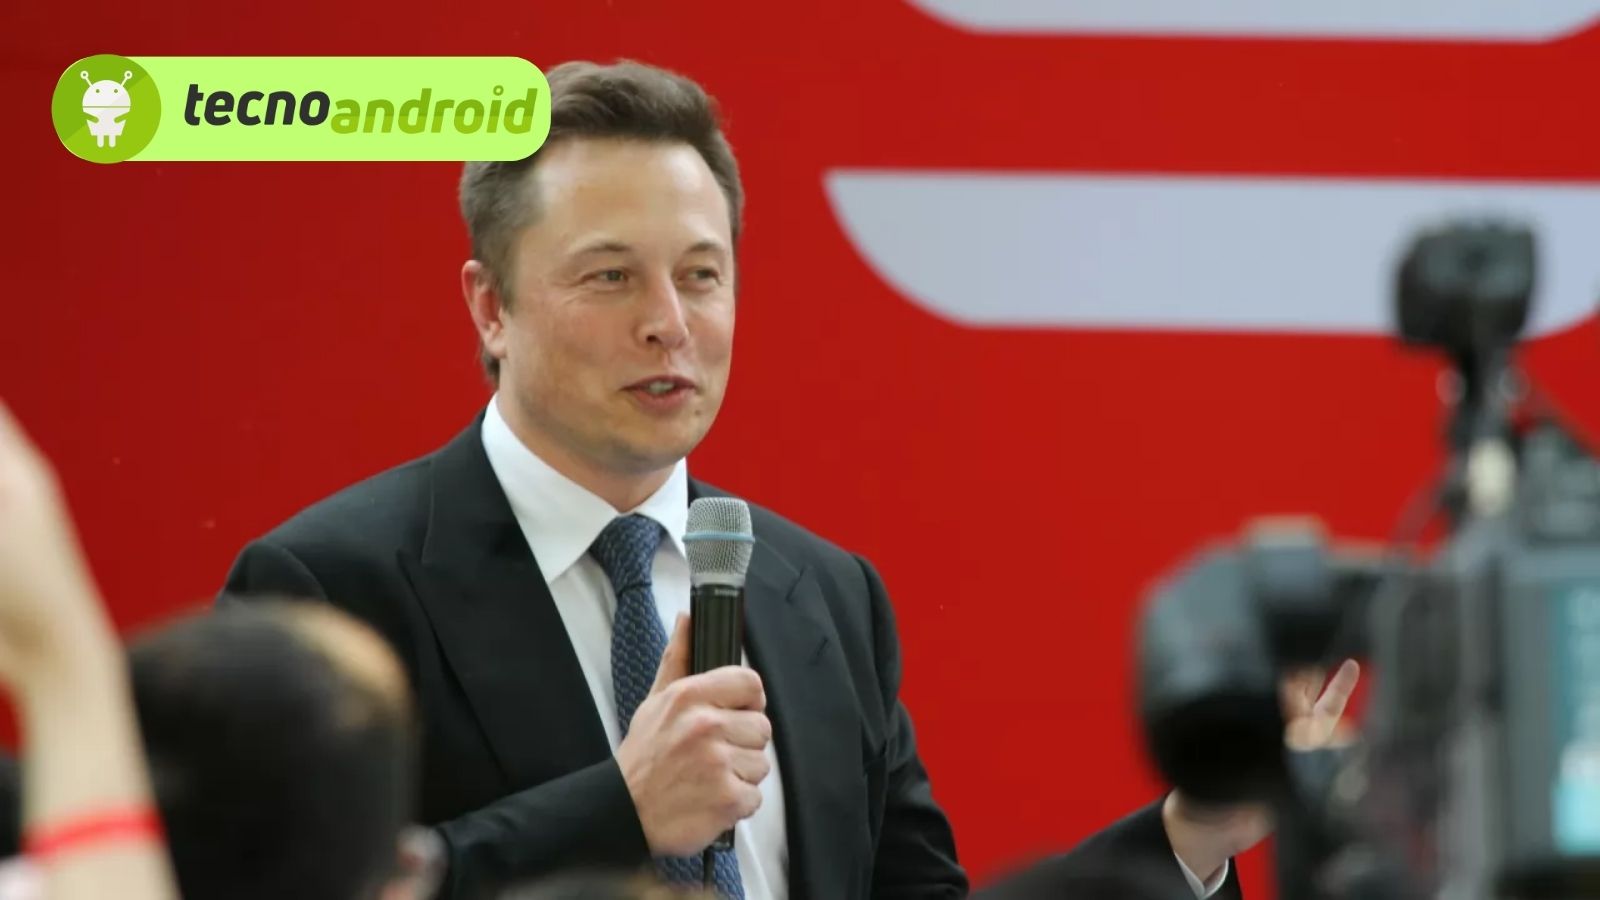 Elon Musk in crisi e perde il primato di più ricco del mondo 